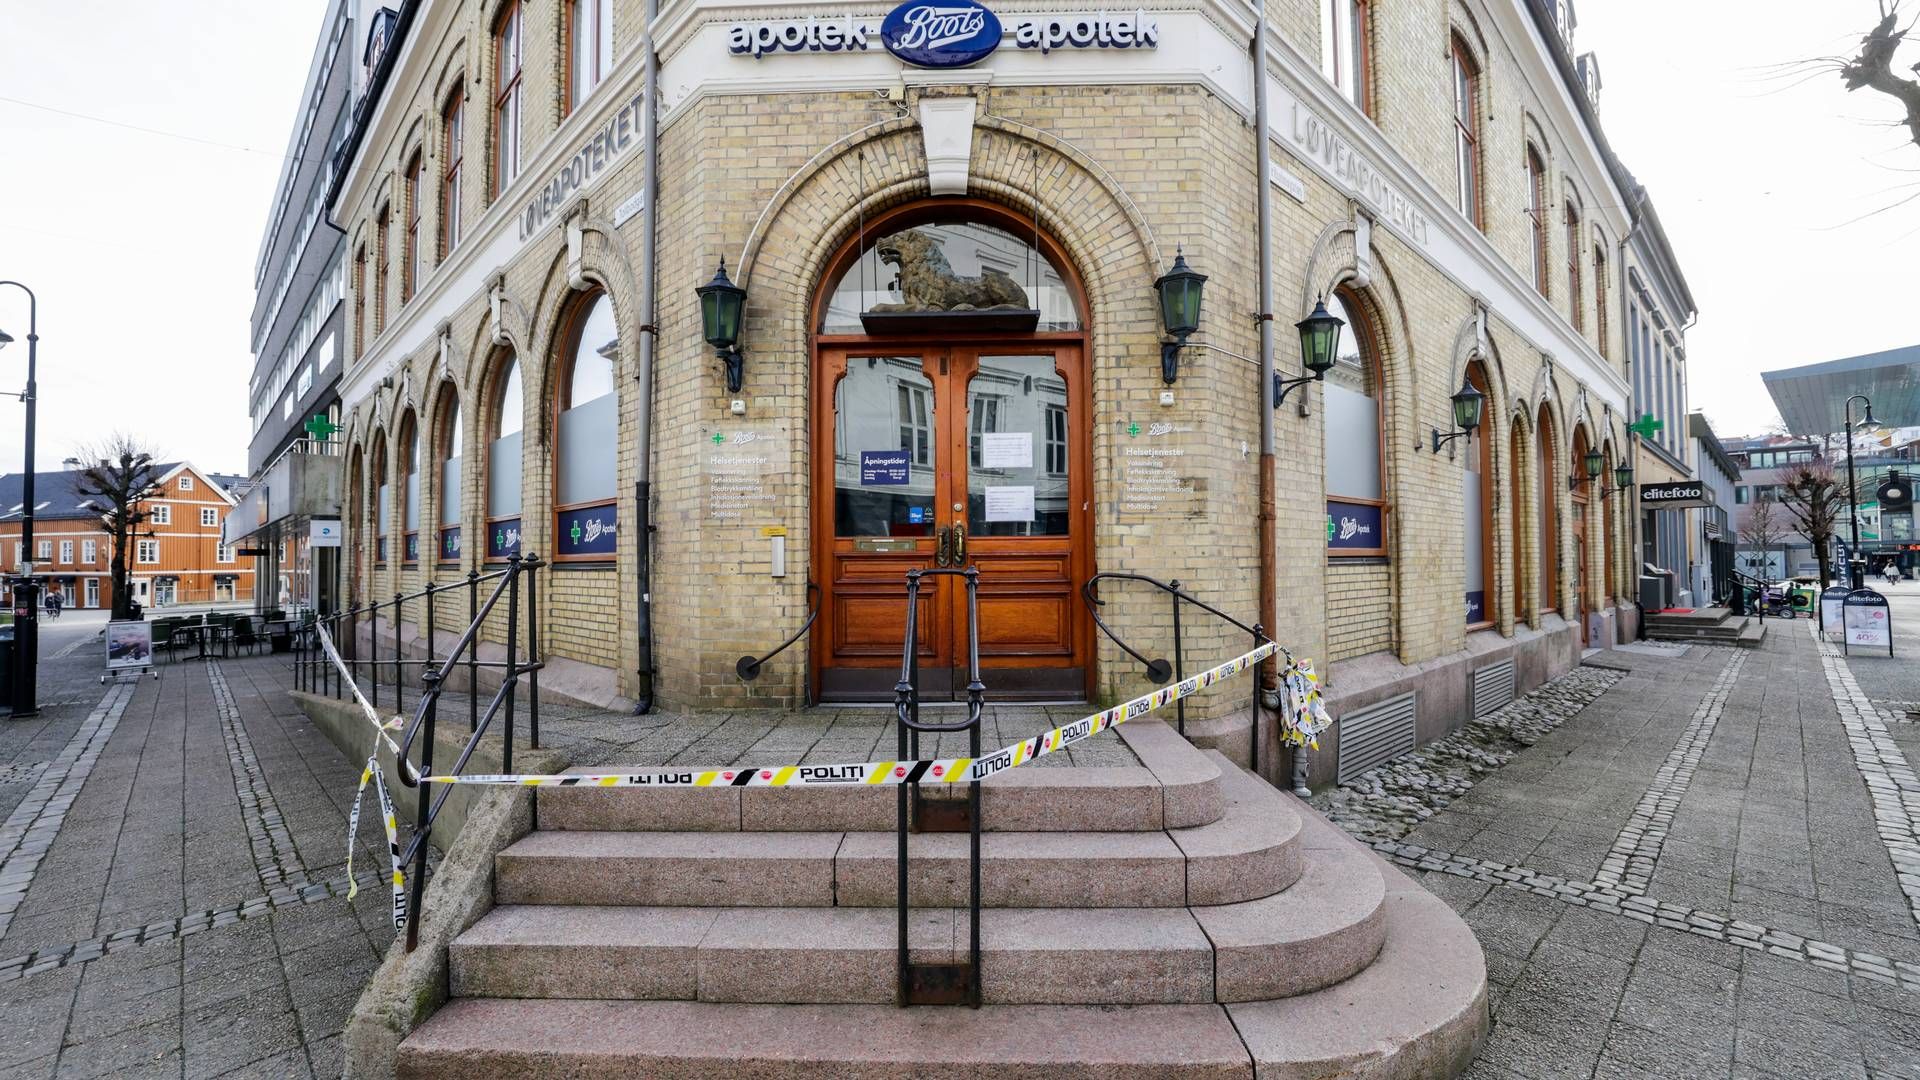 DØDE: Kvinnen døde inne på Boots Apotek i Arendal, som var hennes arbeidsplass. Politiet etterforsker saken som drap. | Foto: Tor Erik Schröder / NTB scanpix